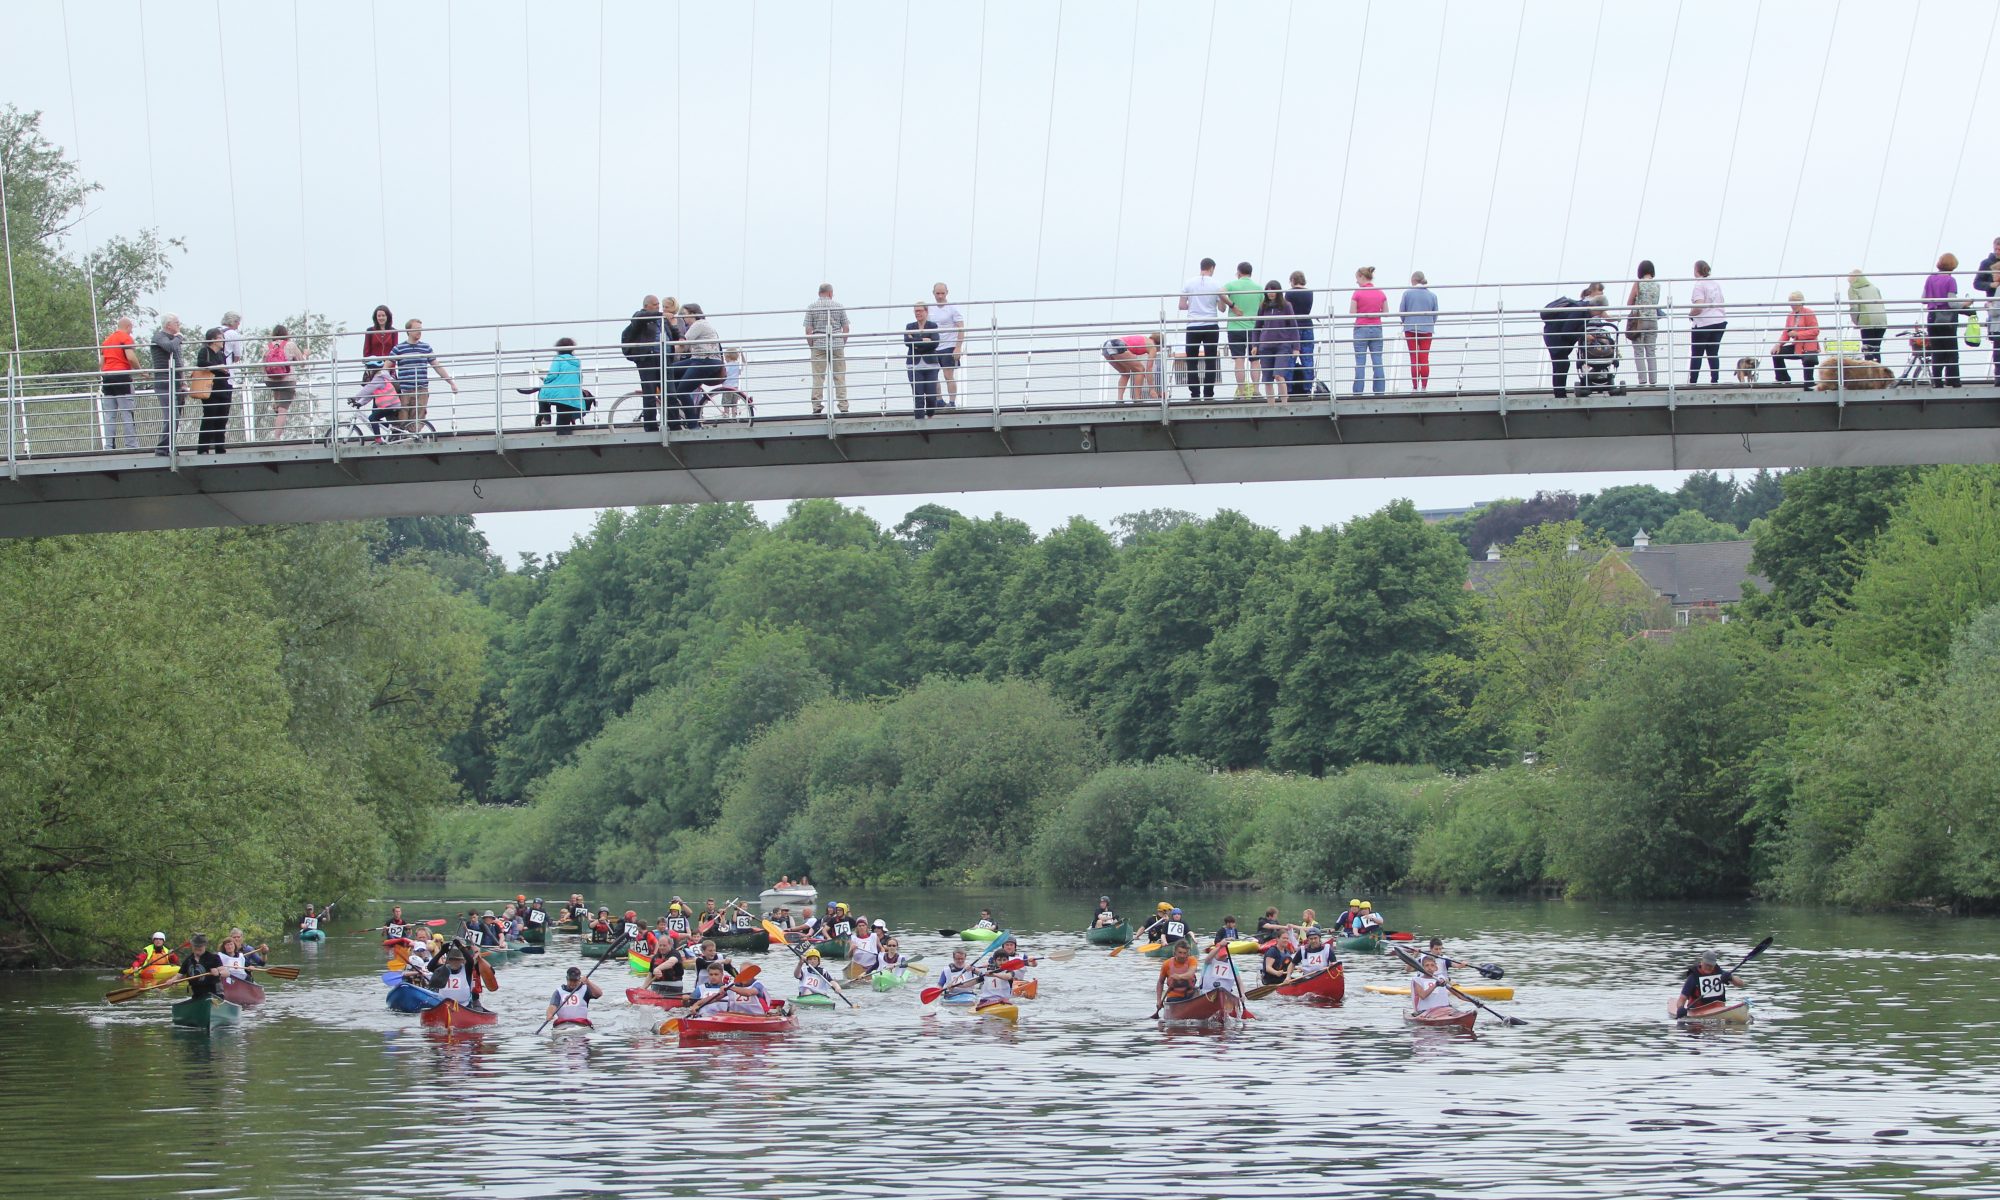 York Canoe Race